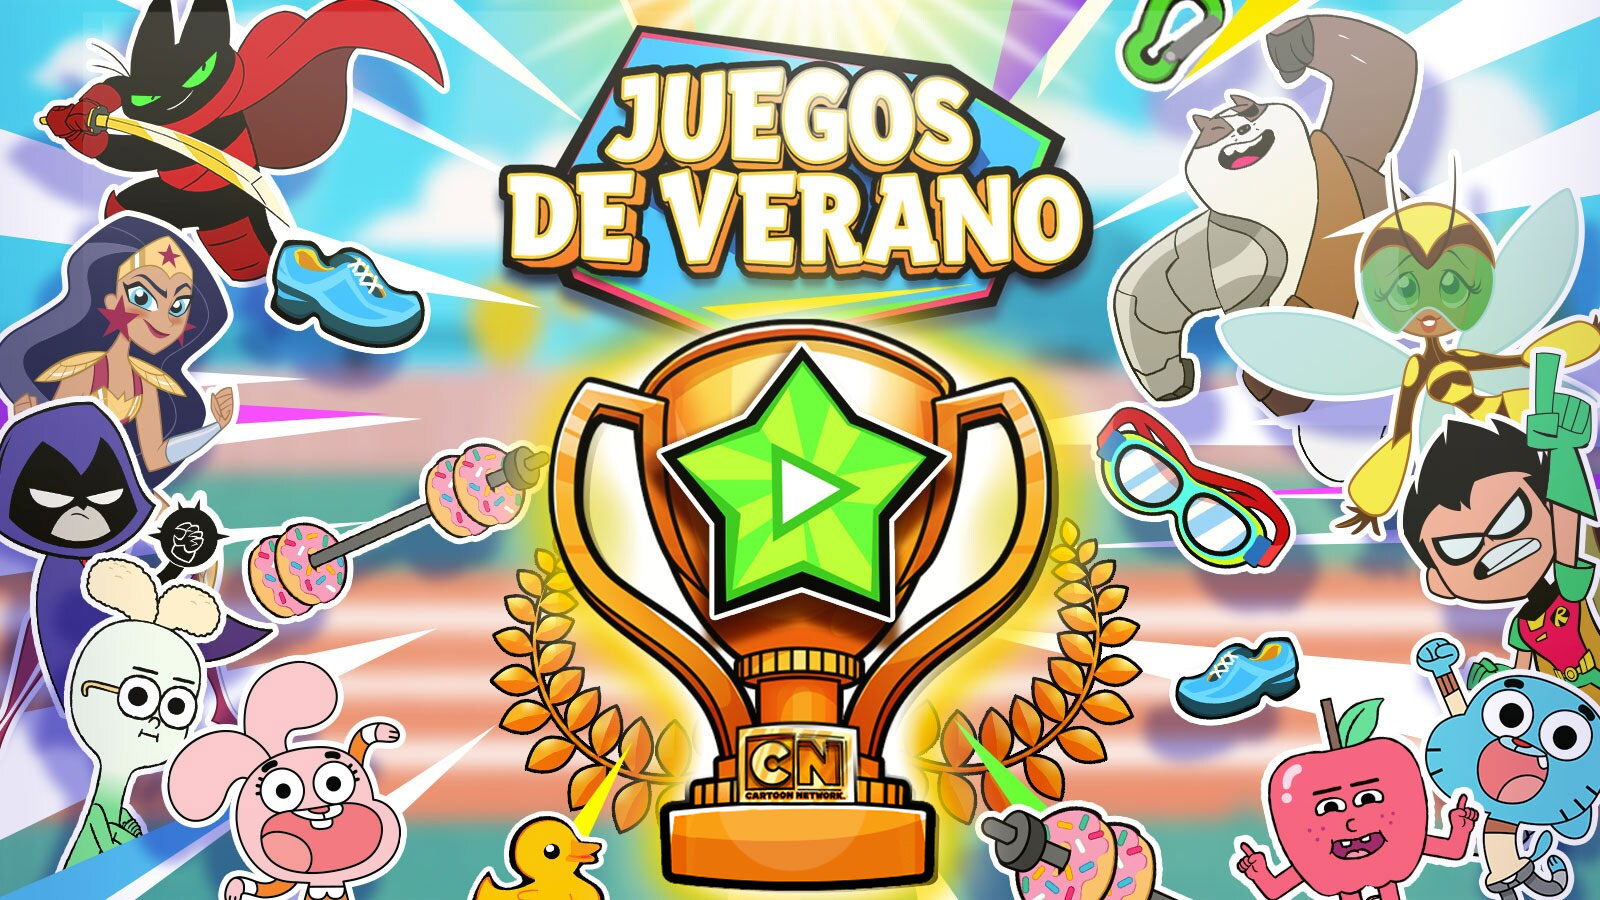 Juegos de Verano | Cartoon Network Latinoamérica